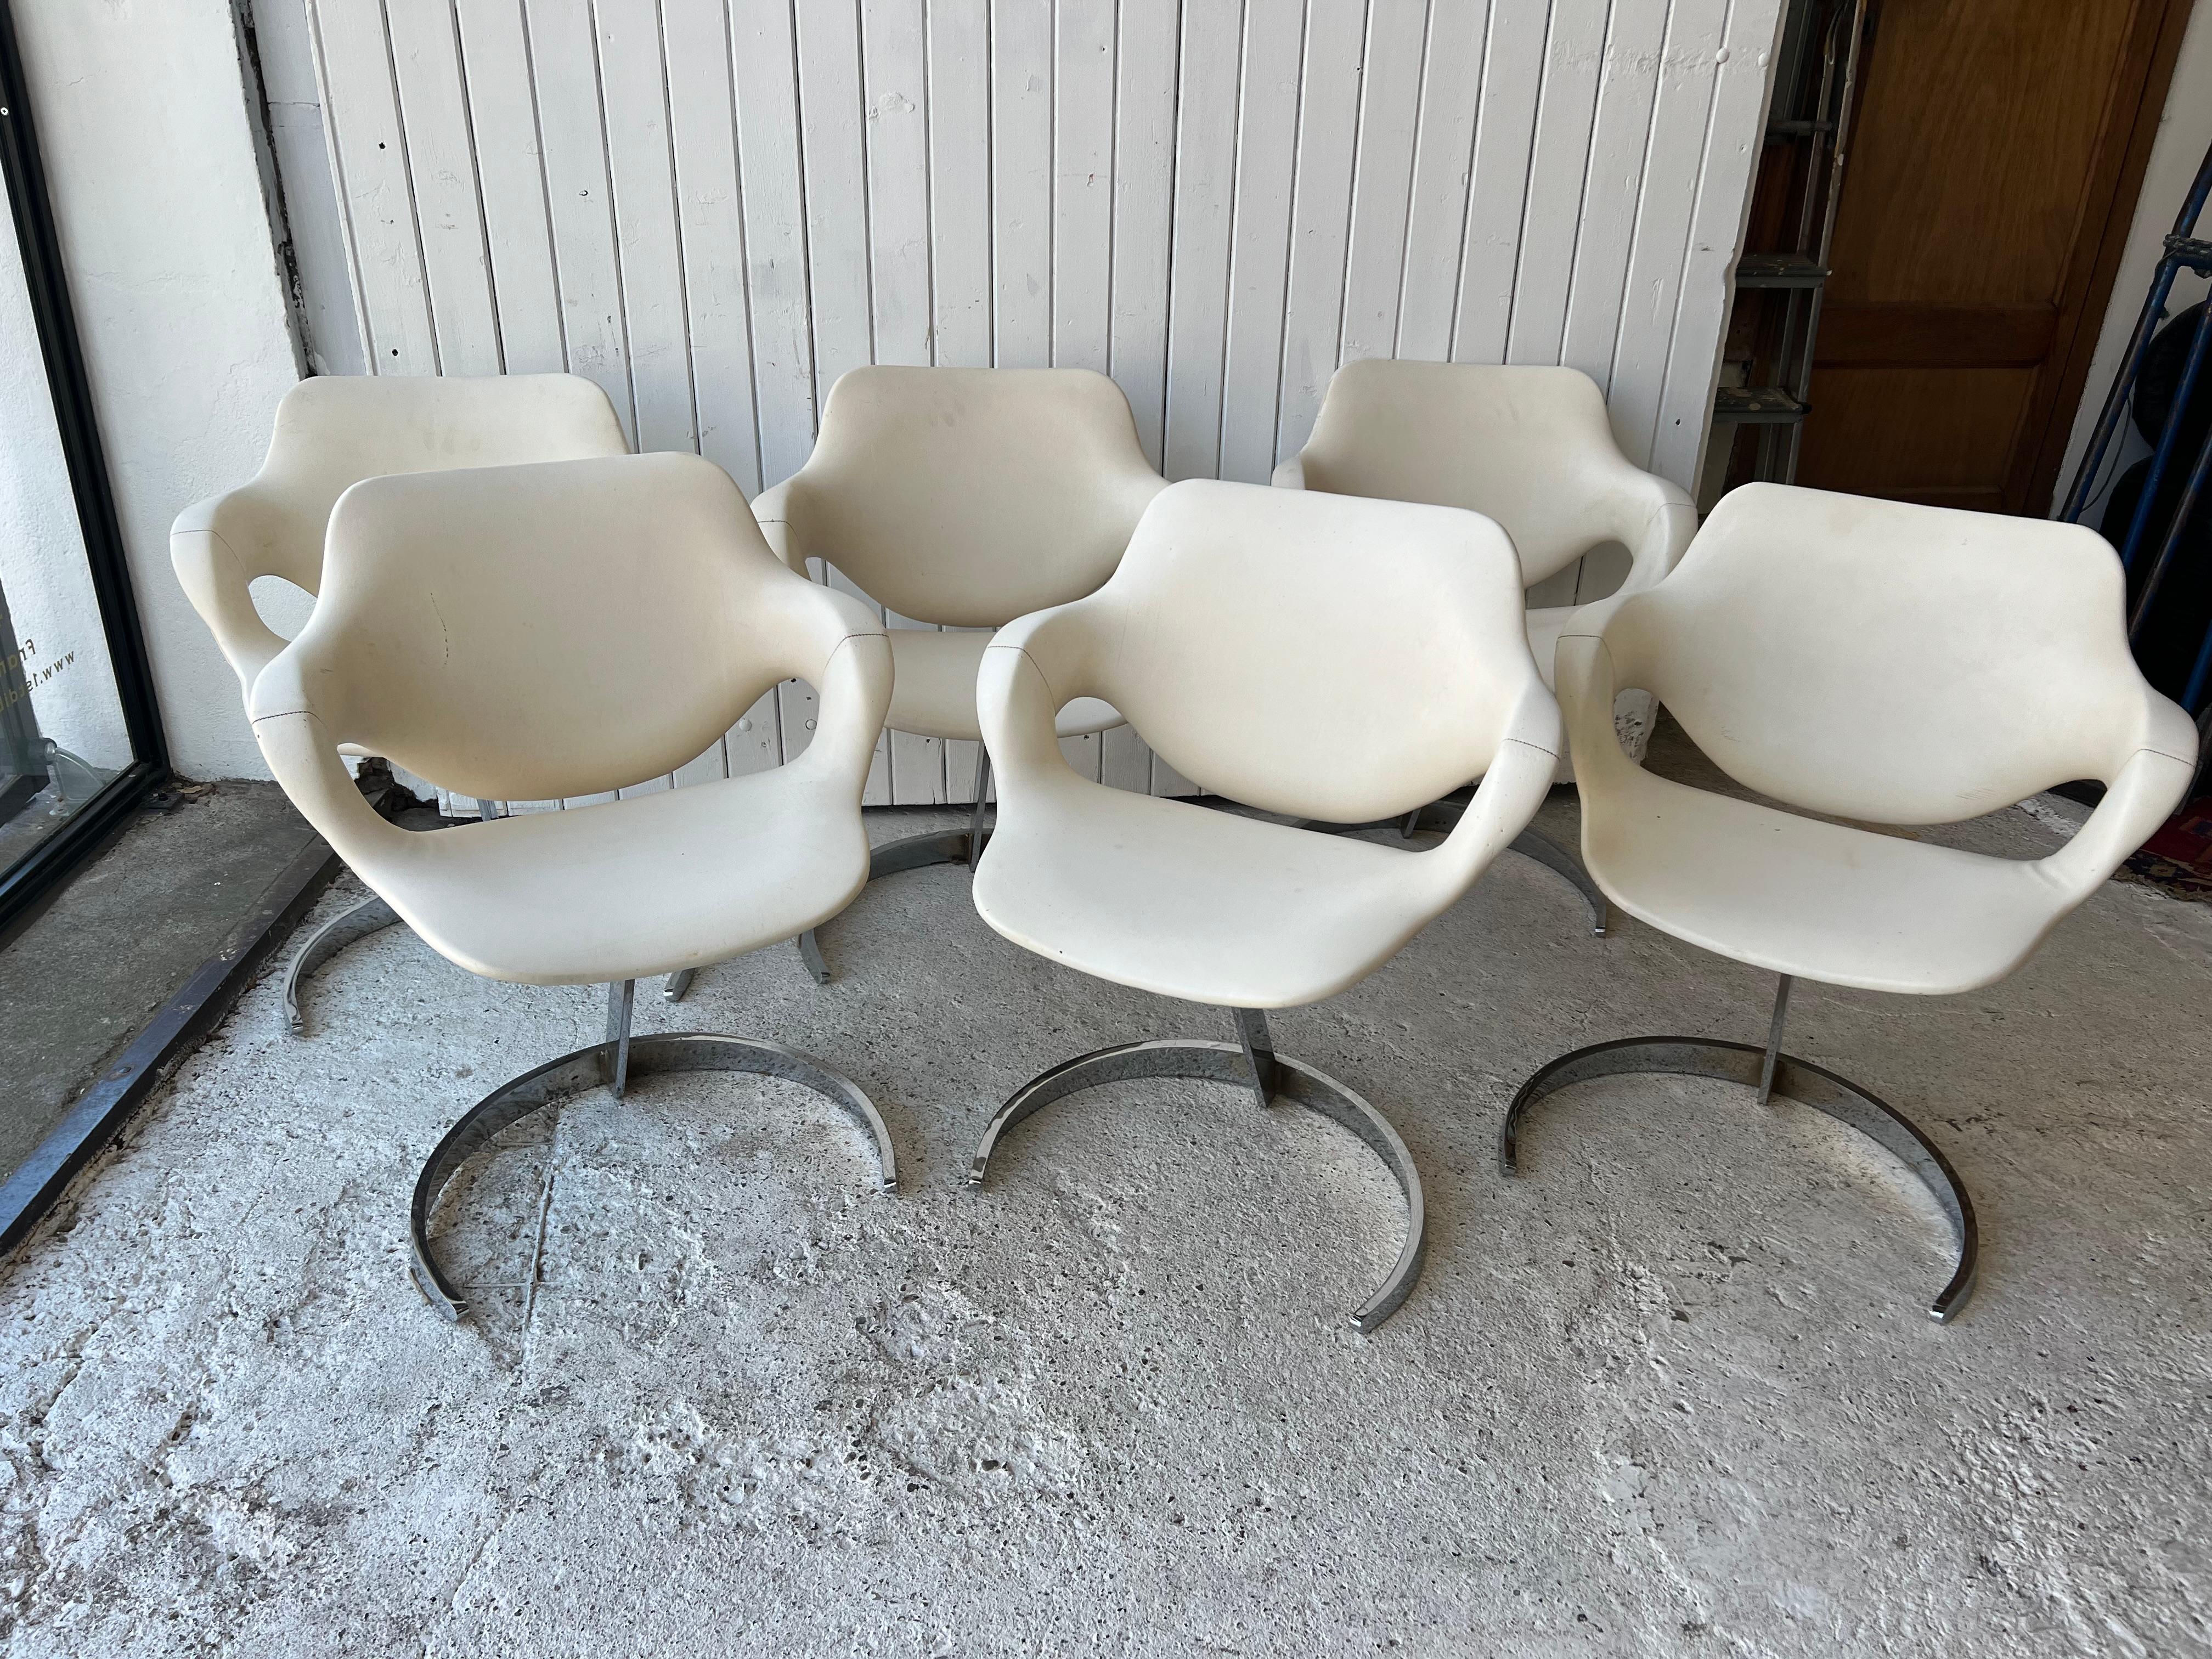 6 chaises de salle à manger Boris Tabacoof Scimitar par MMM , France 1960/70
Tabacoff est connu pour ses pièces d'aspect futuriste des années 1960.

Le siège est typiquement d'origine en skaï blanc des années 1970.

Le bon choix est d'acheter des